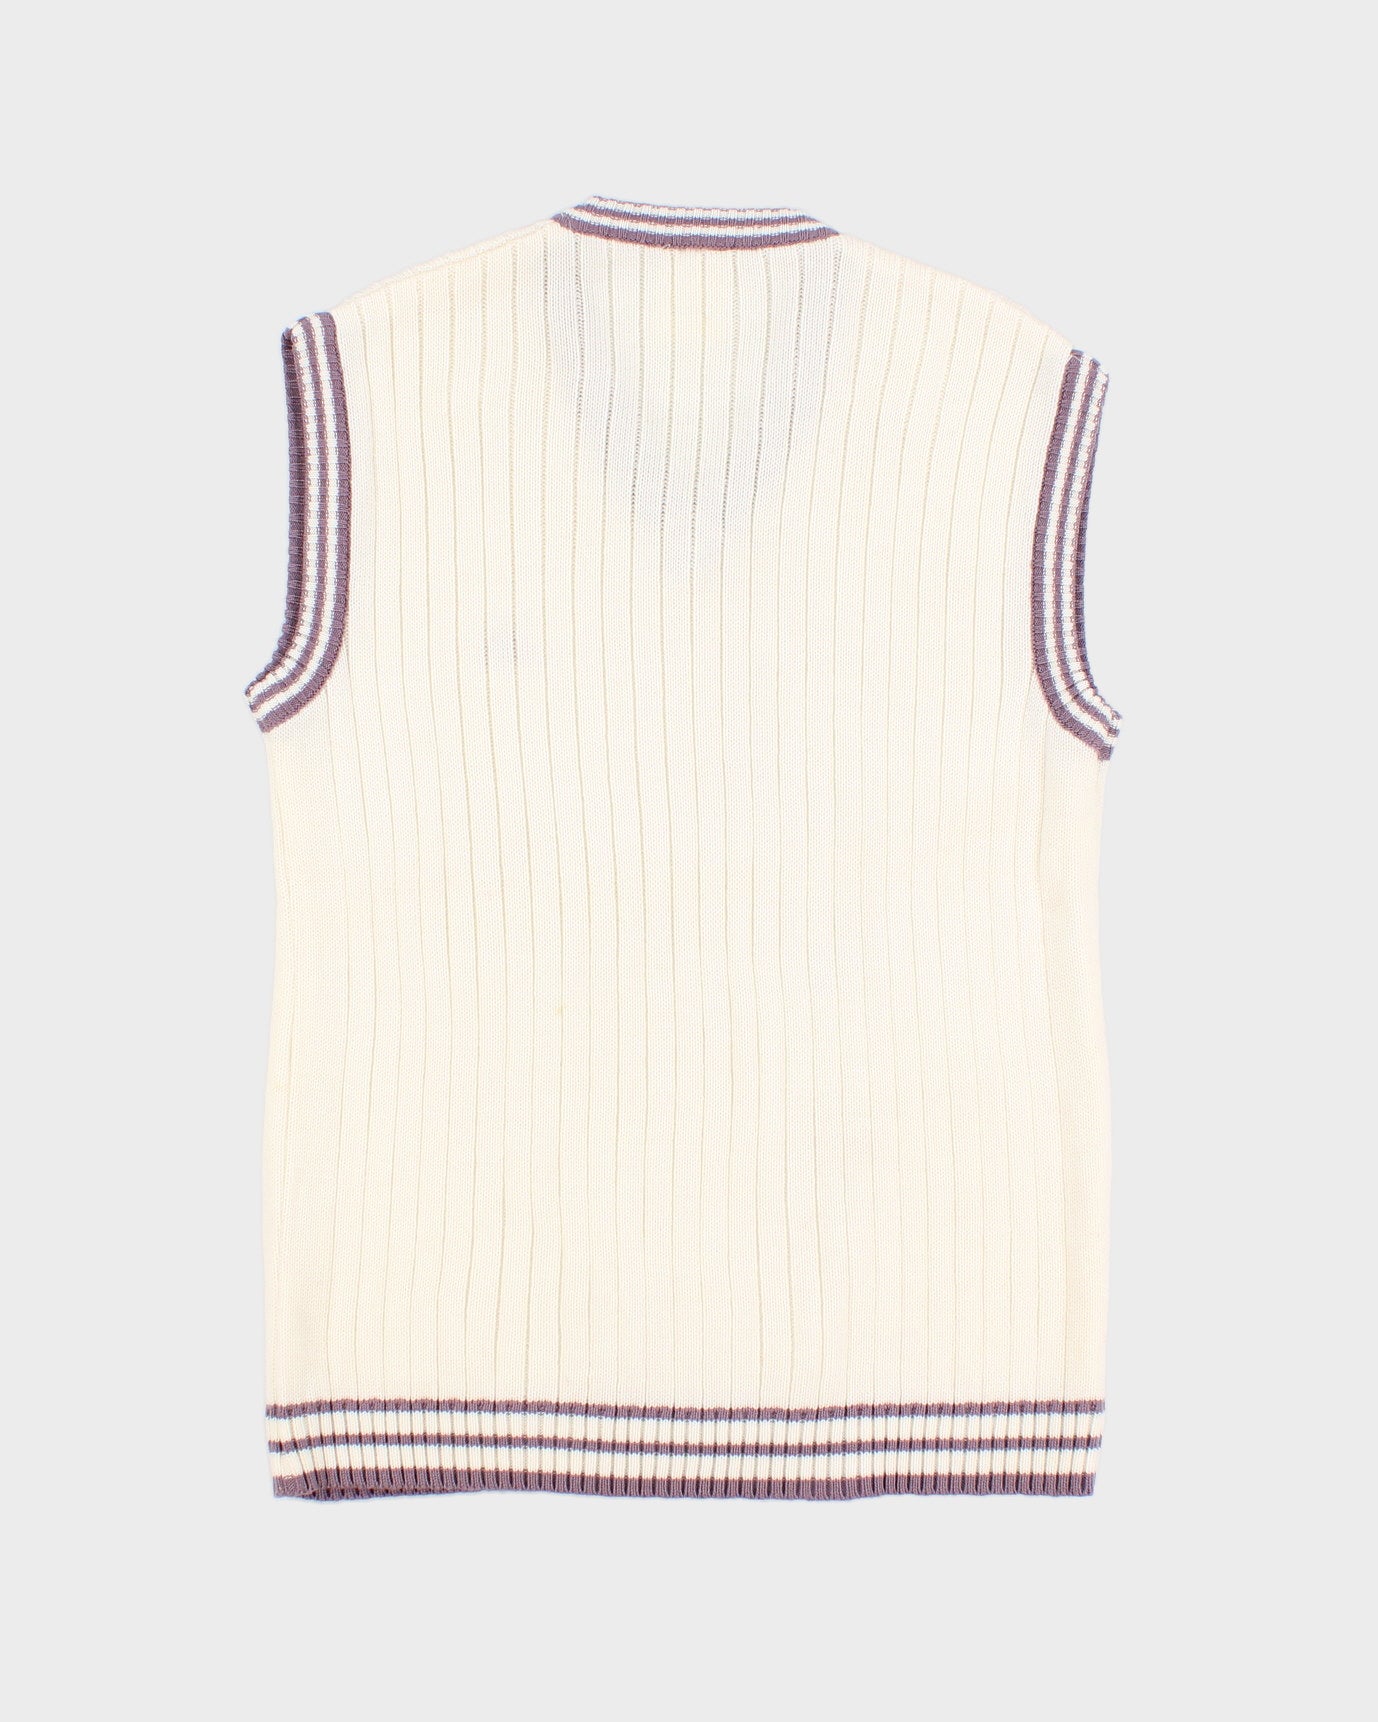 Vintage White and Mauve Adidas knit Vest - M